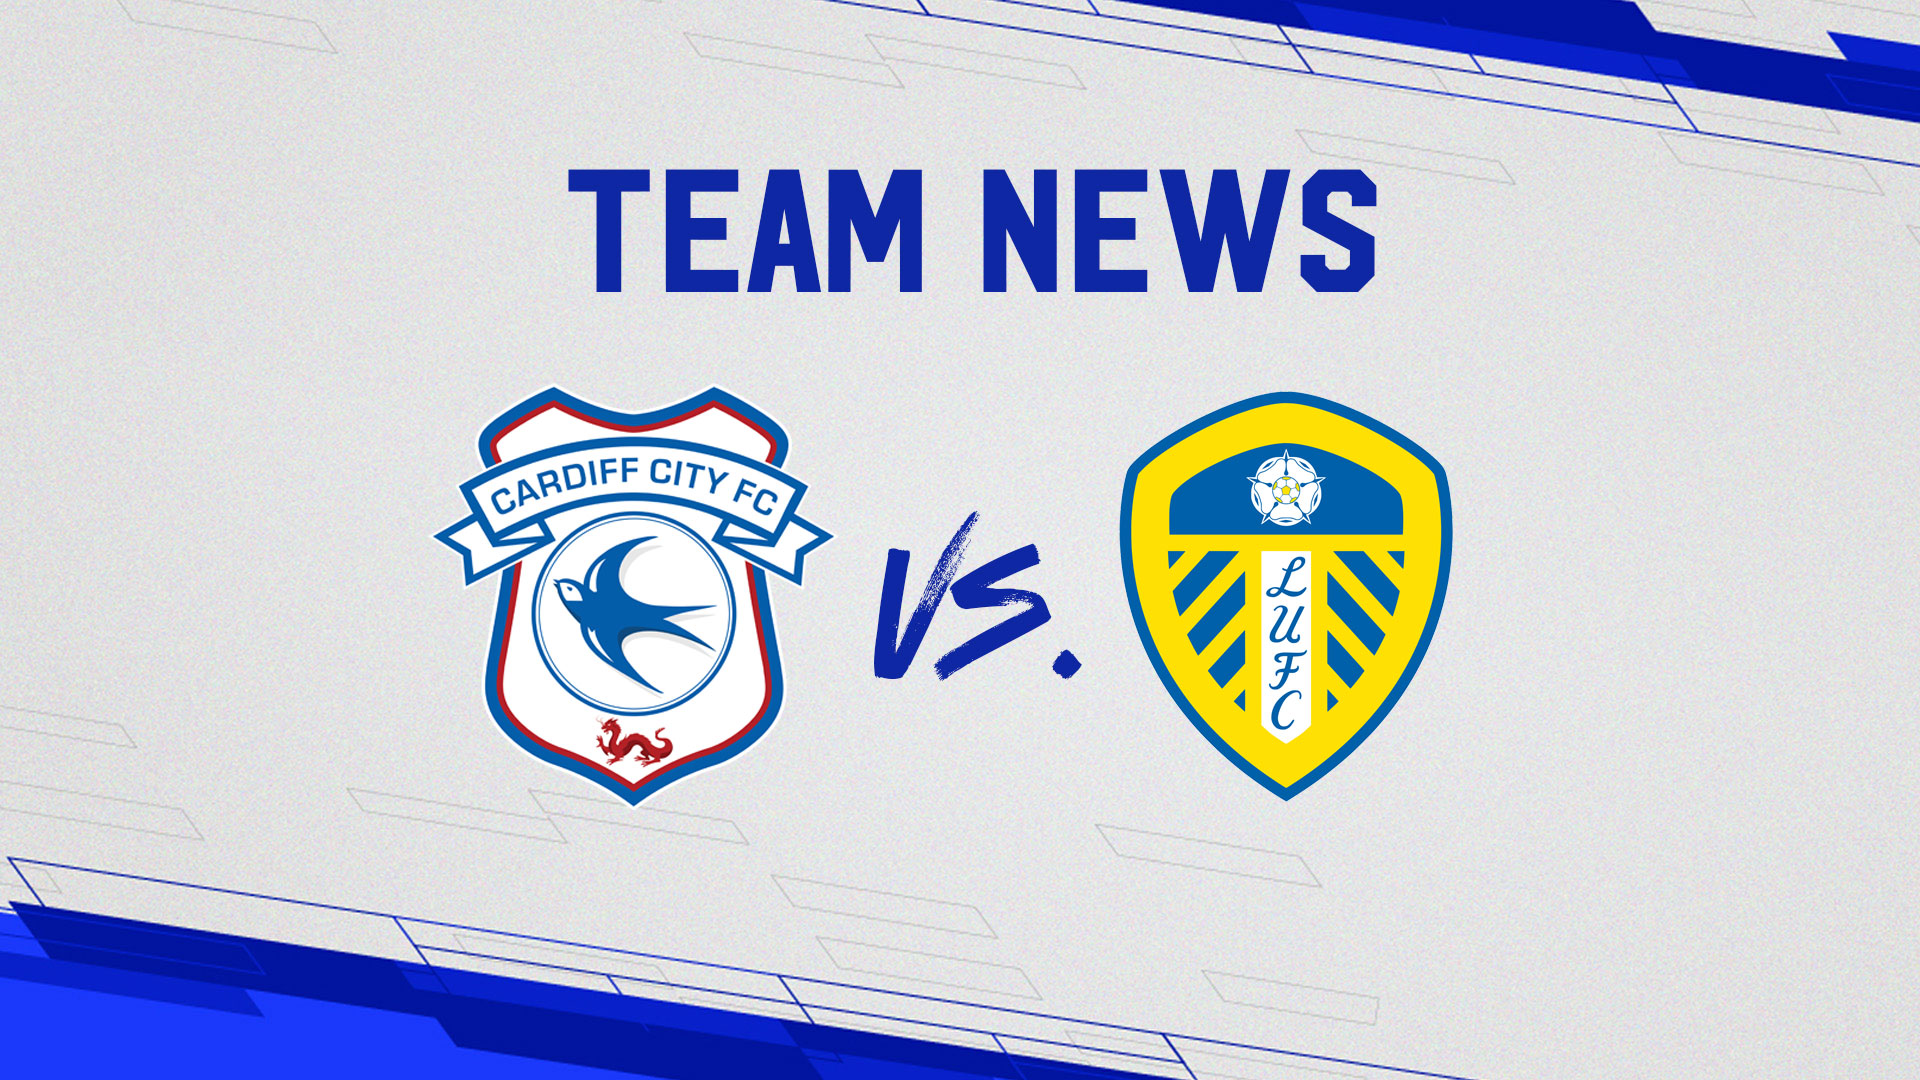 Team News: Cardiff City vs. Leeds United